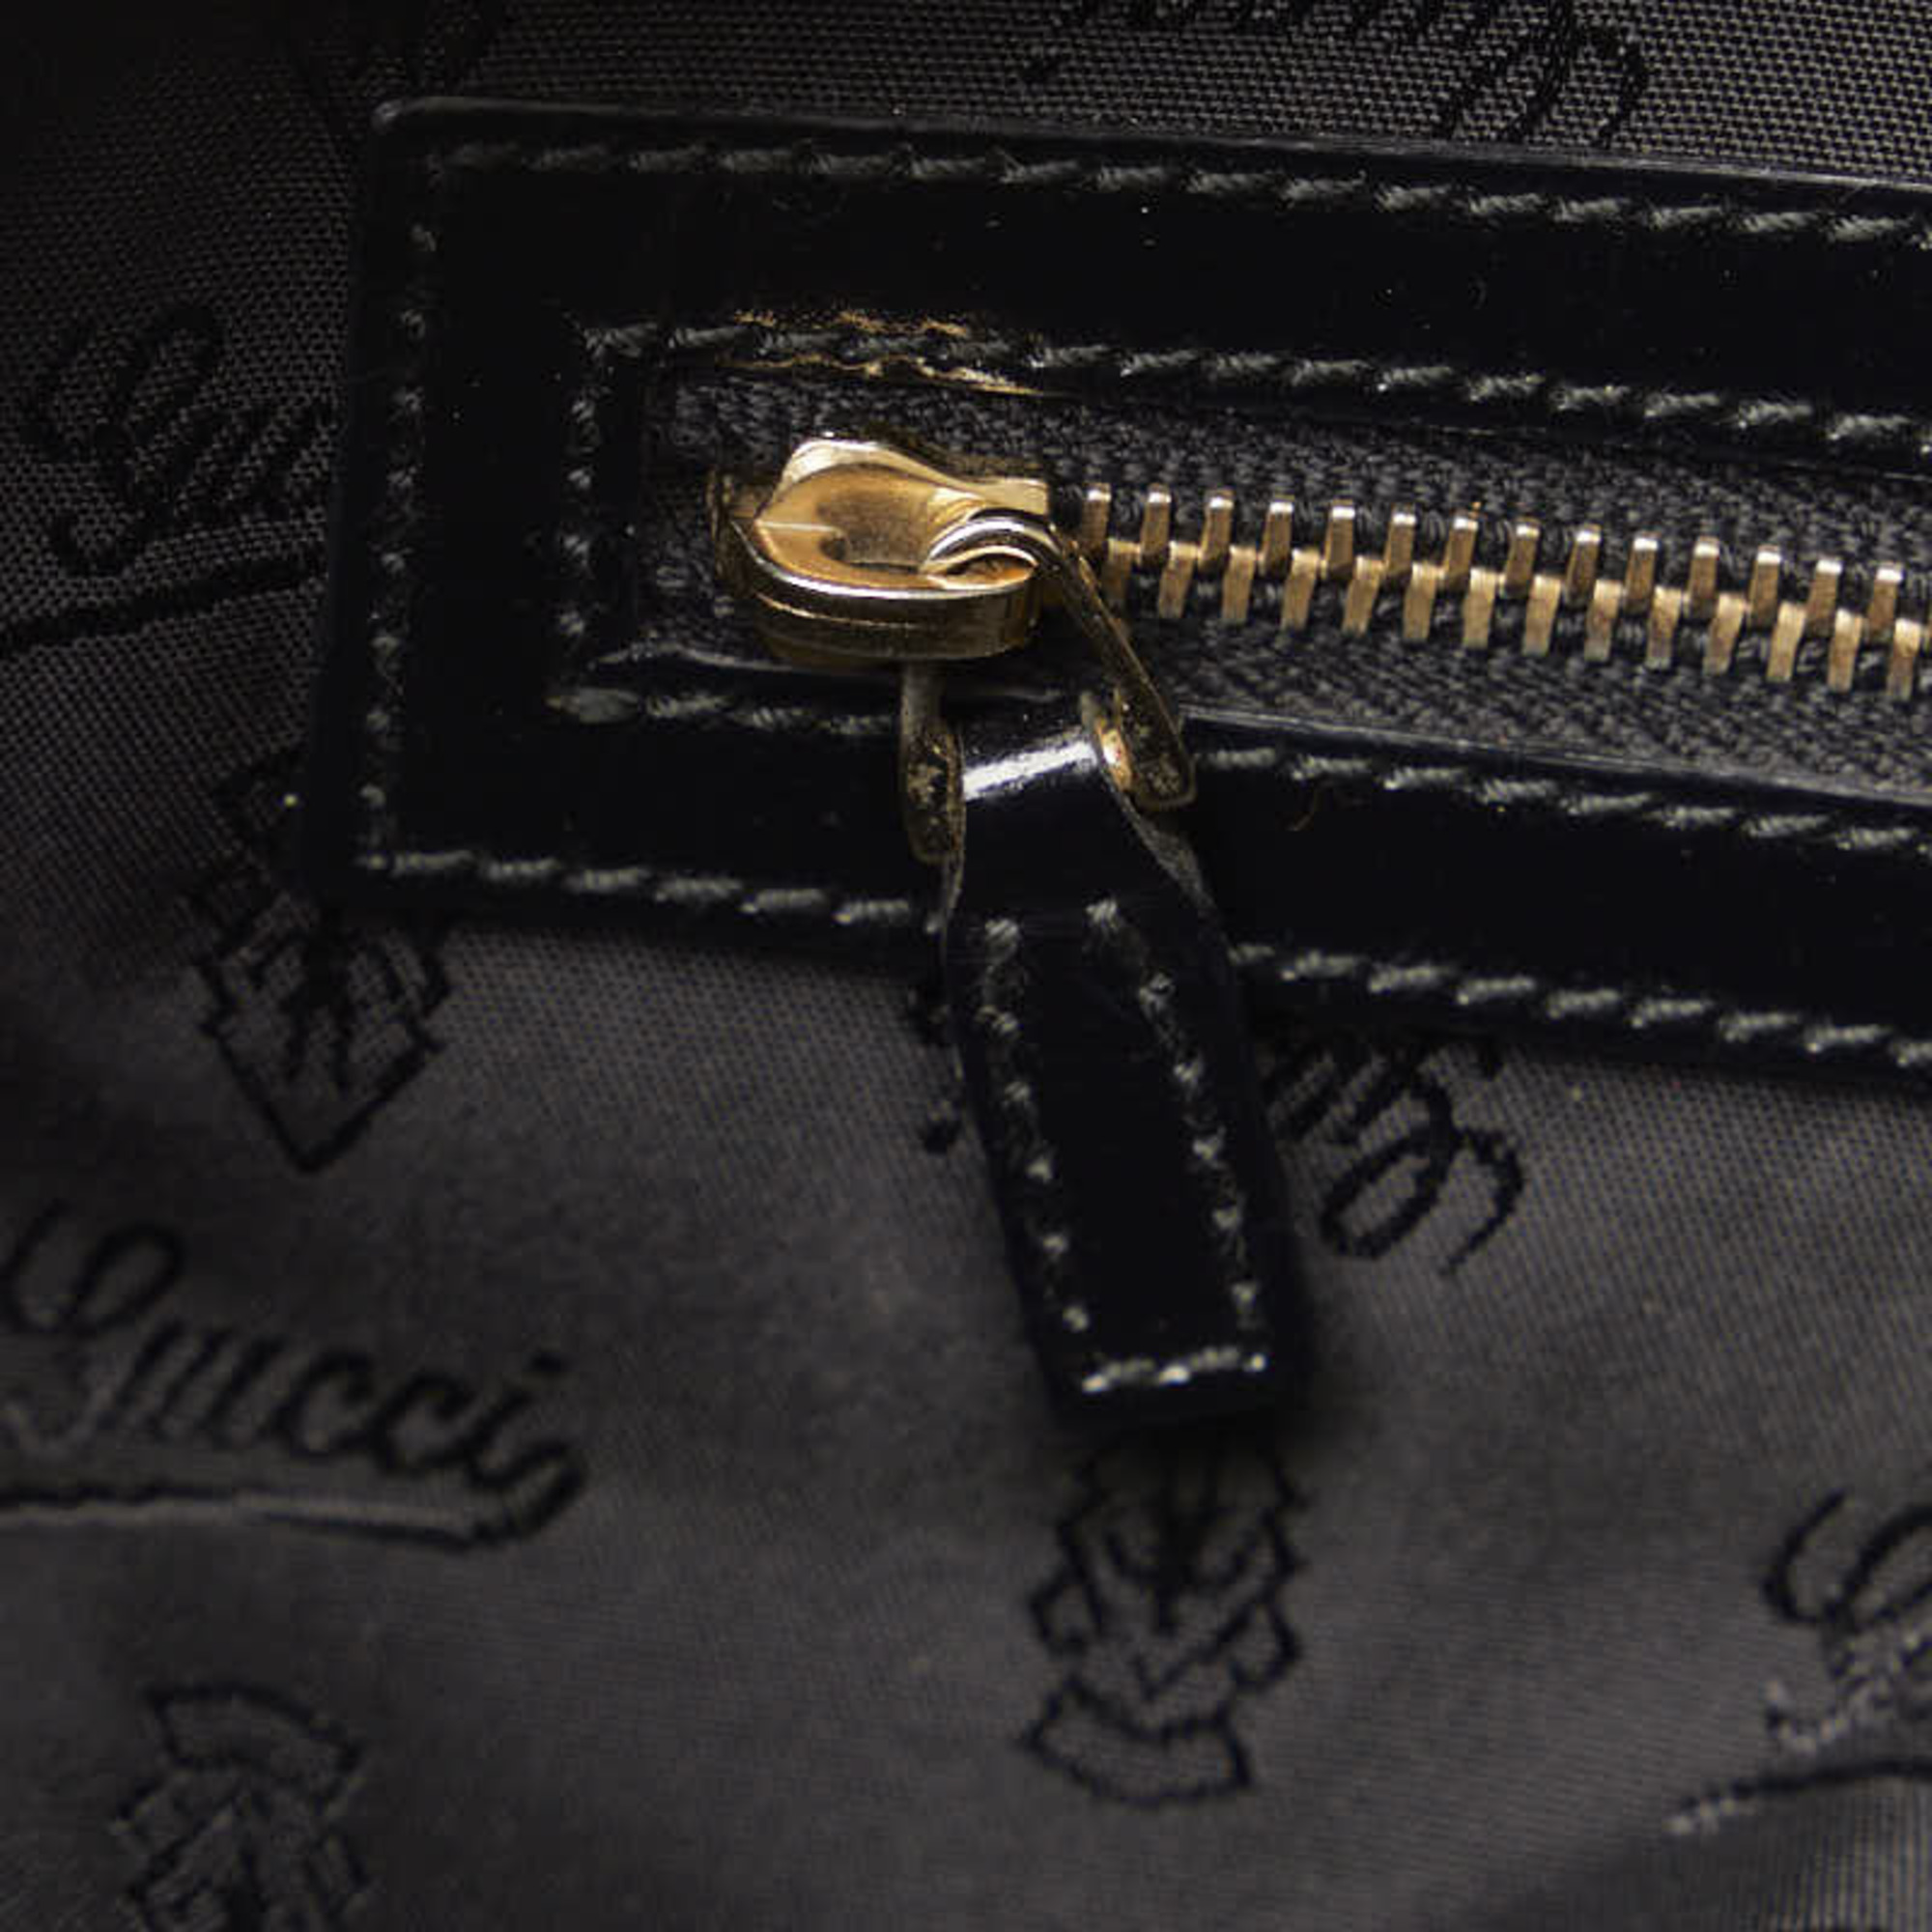 Gucci Bamboo Handbag Shoulder Bag 189869 Black PVC Enamel Women's GUCCI